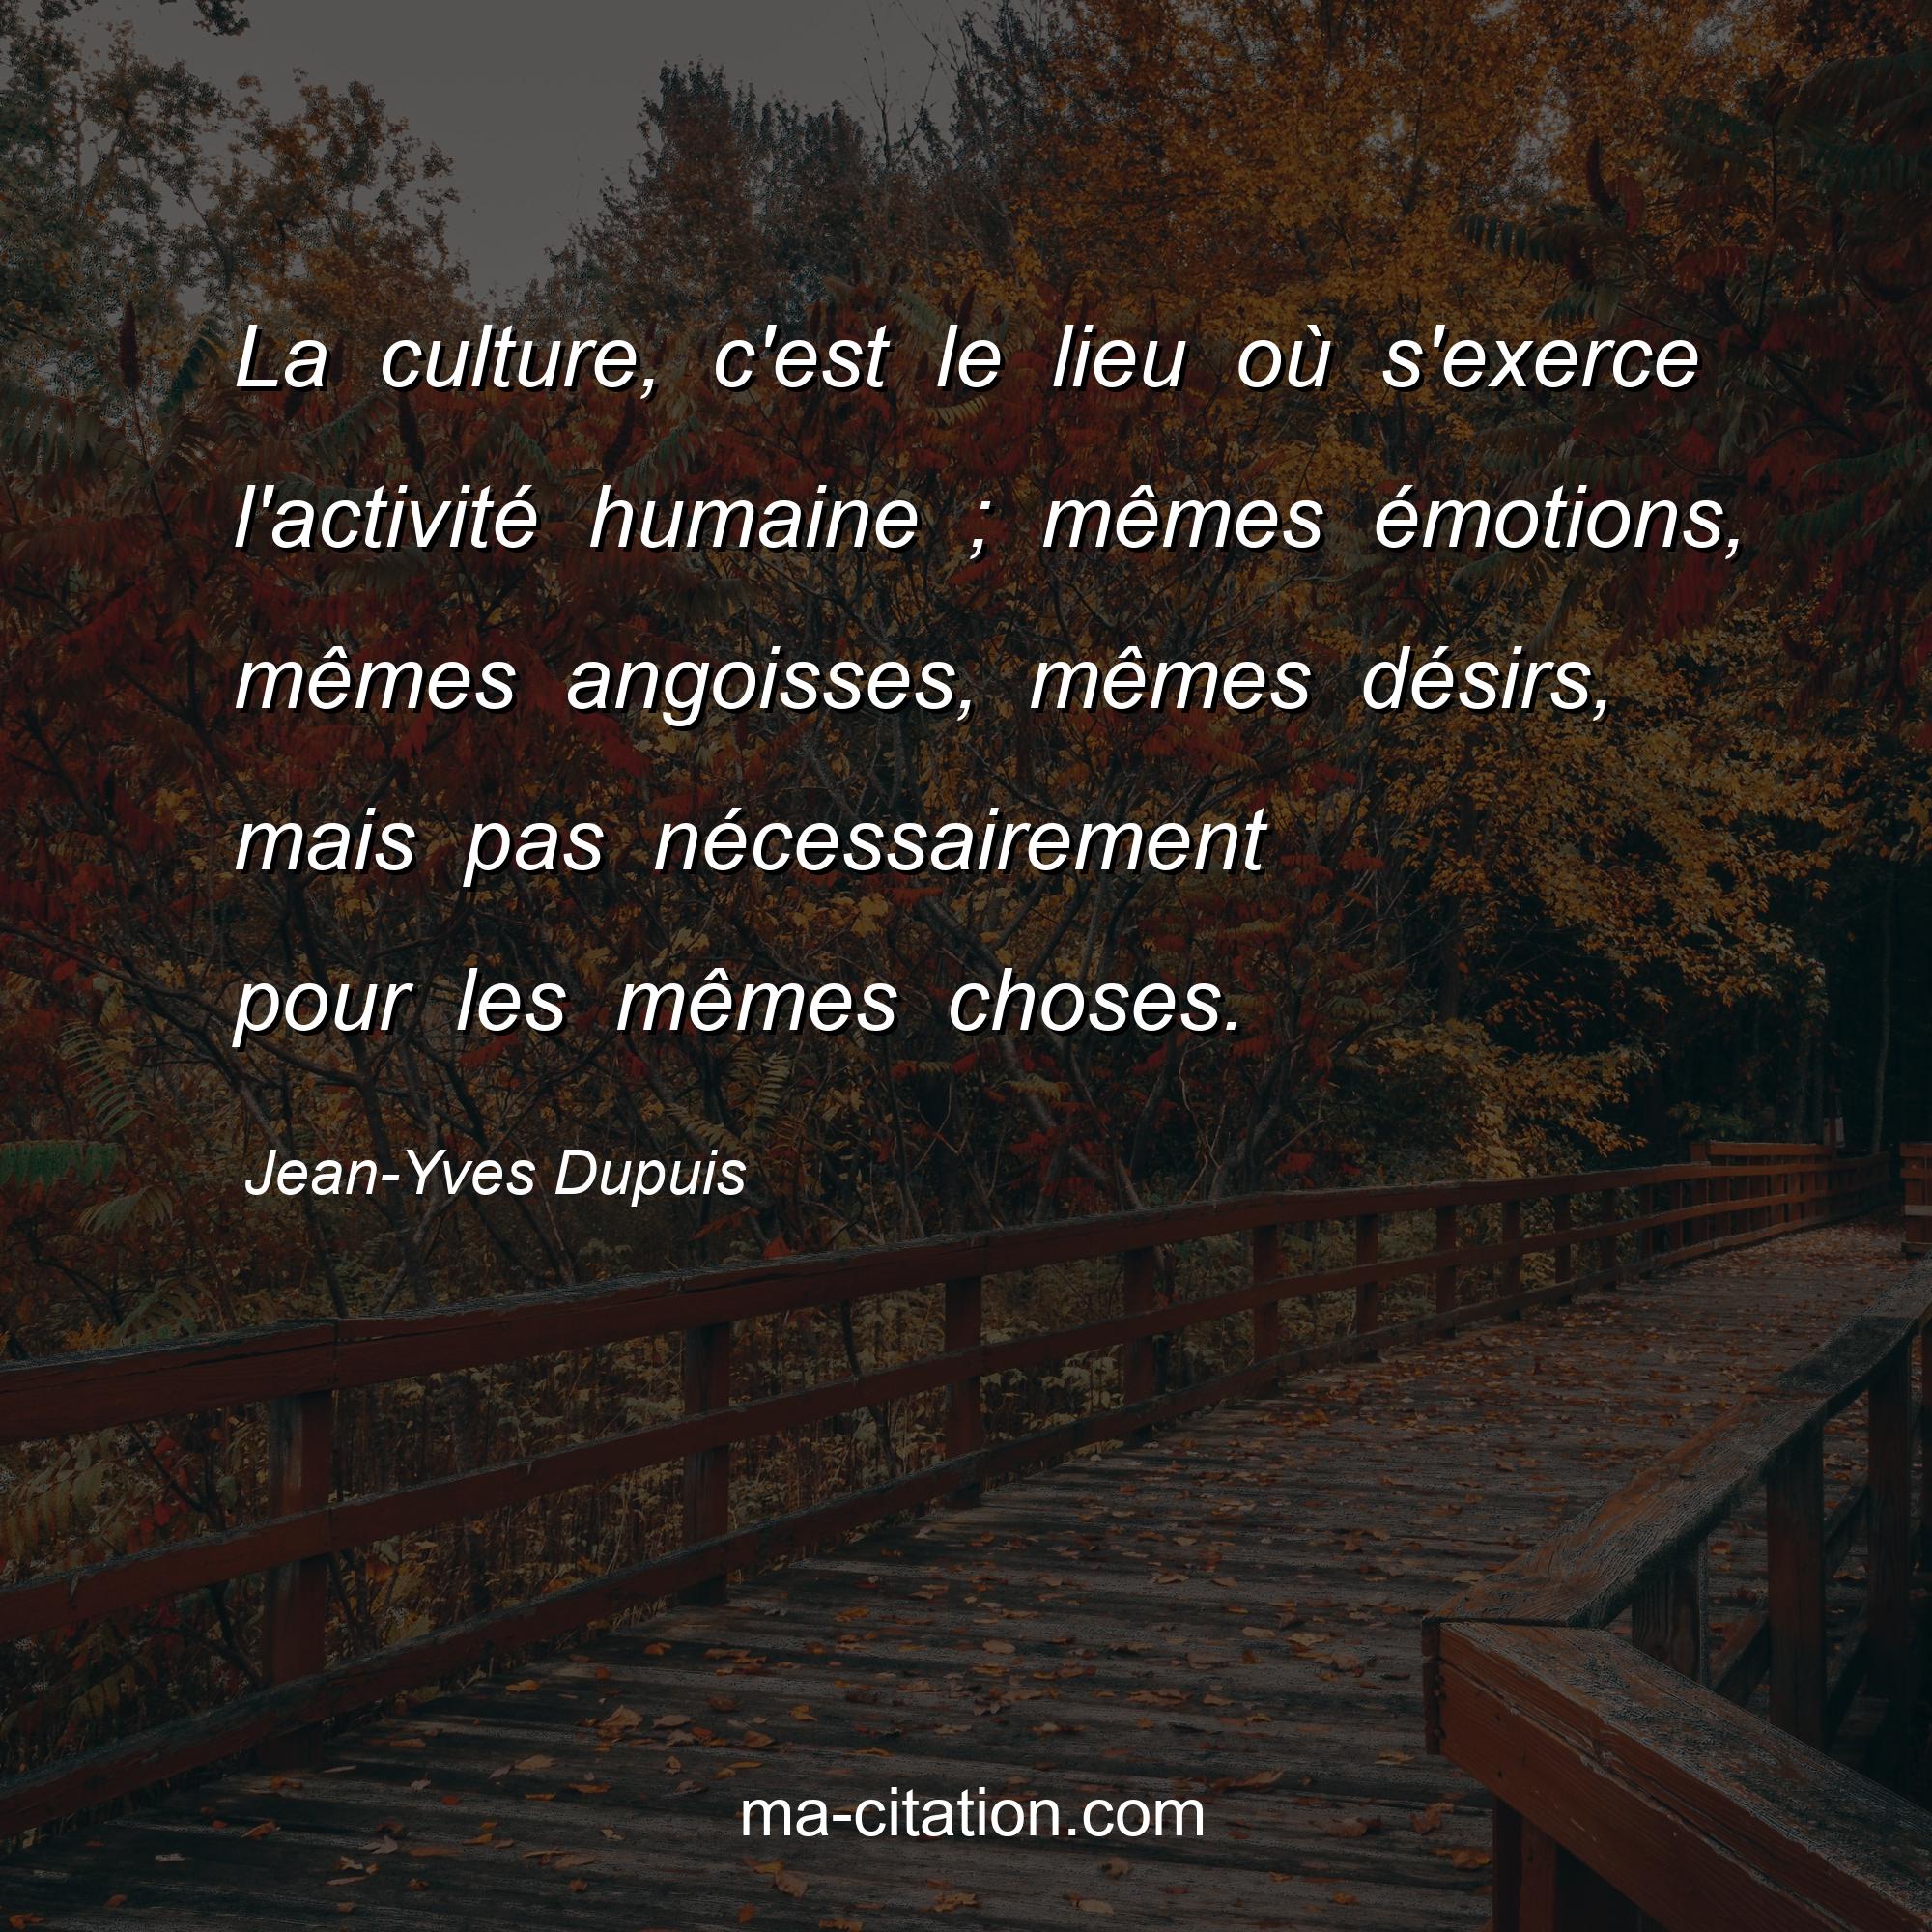 Jean-Yves Dupuis : La culture, c'est le lieu où s'exerce l'activité humaine ; mêmes émotions, mêmes angoisses, mêmes désirs, mais pas nécessairement pour les mêmes choses.